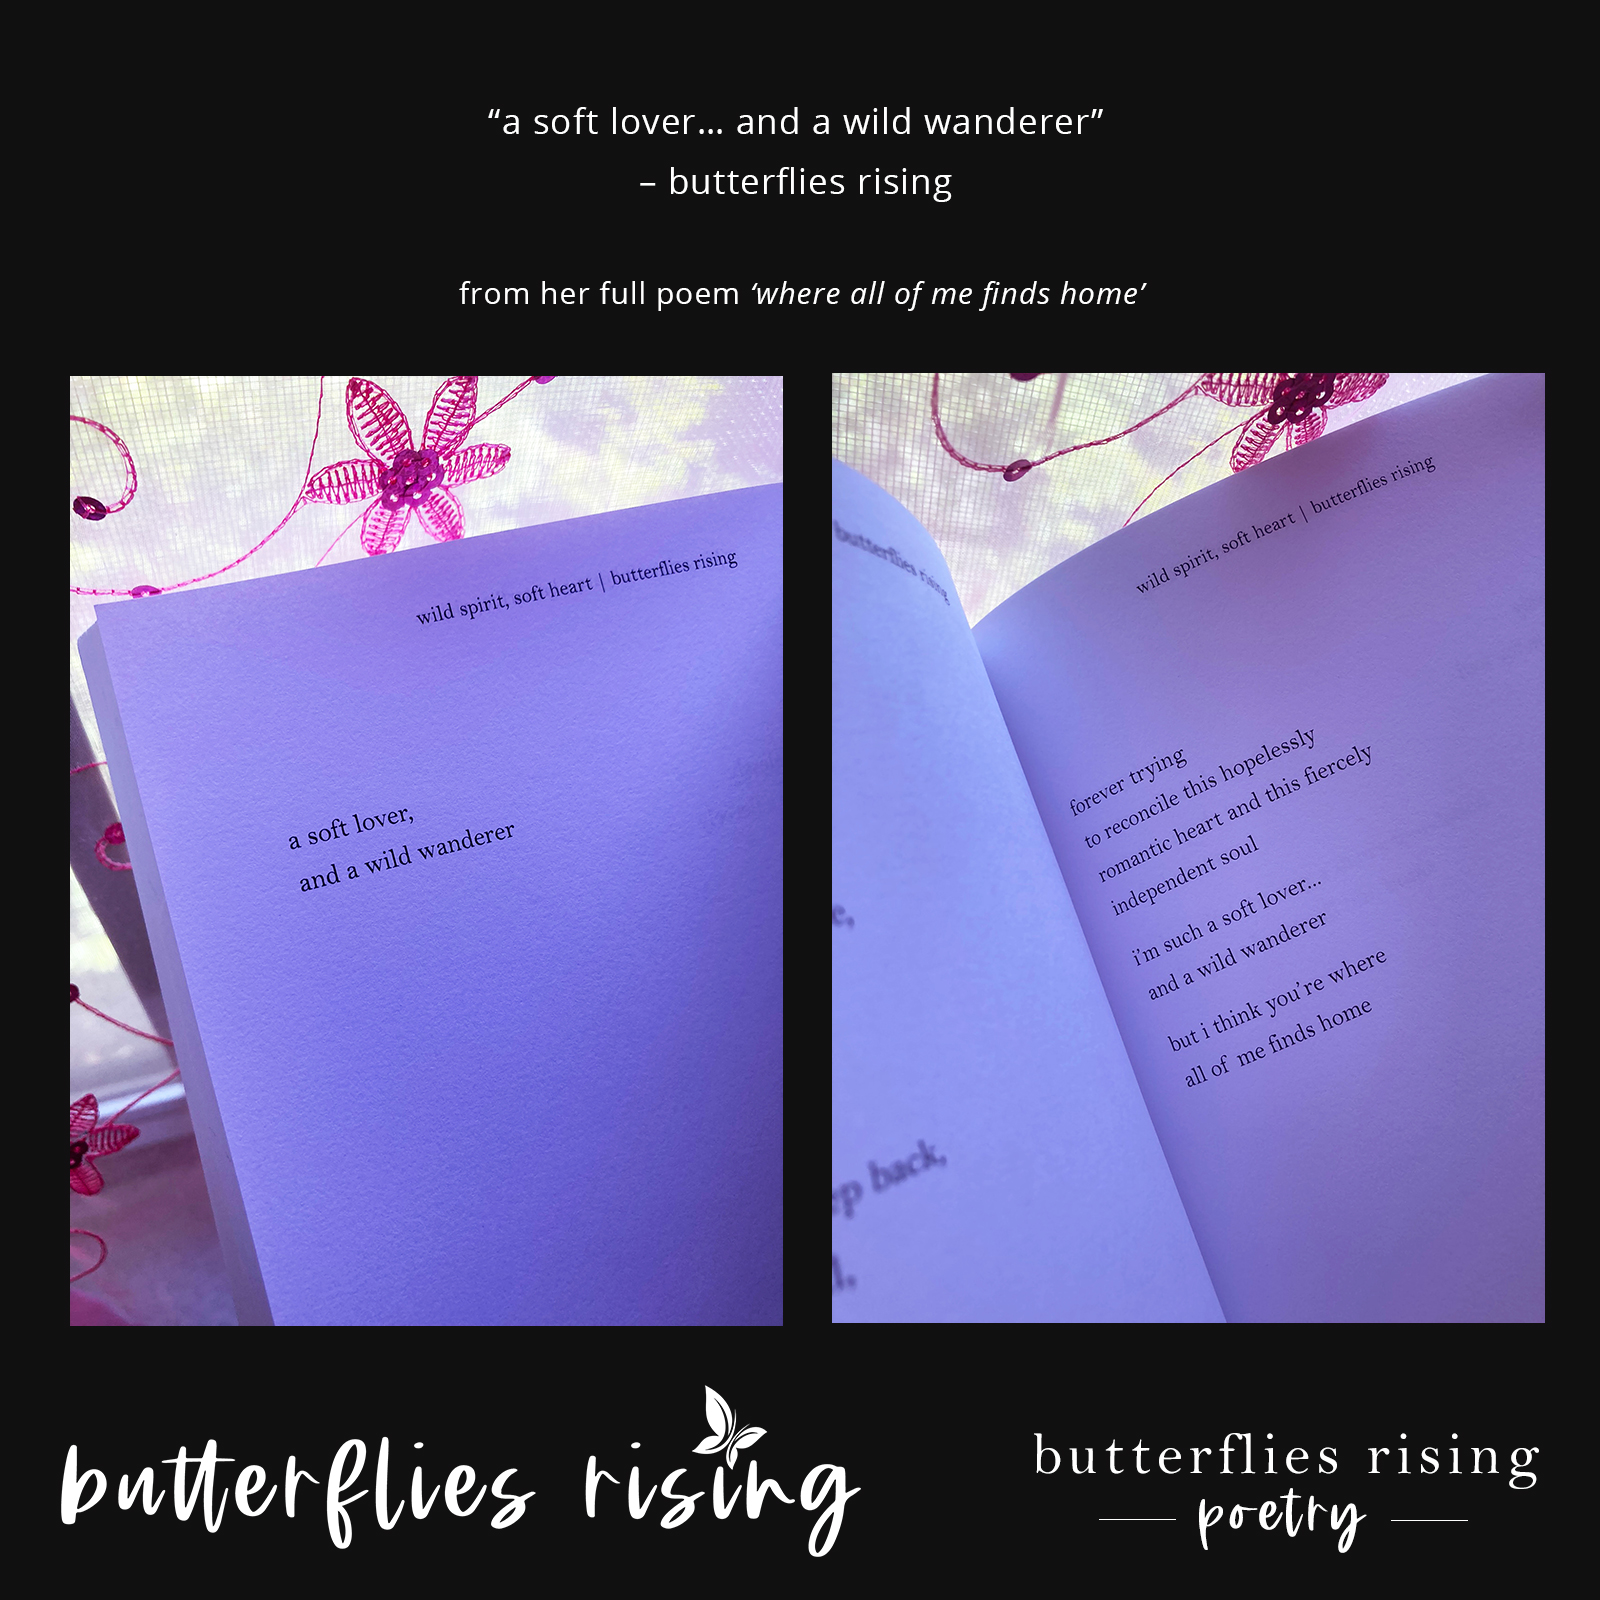 a soft lover, and a wild wanderer - butterflies rising